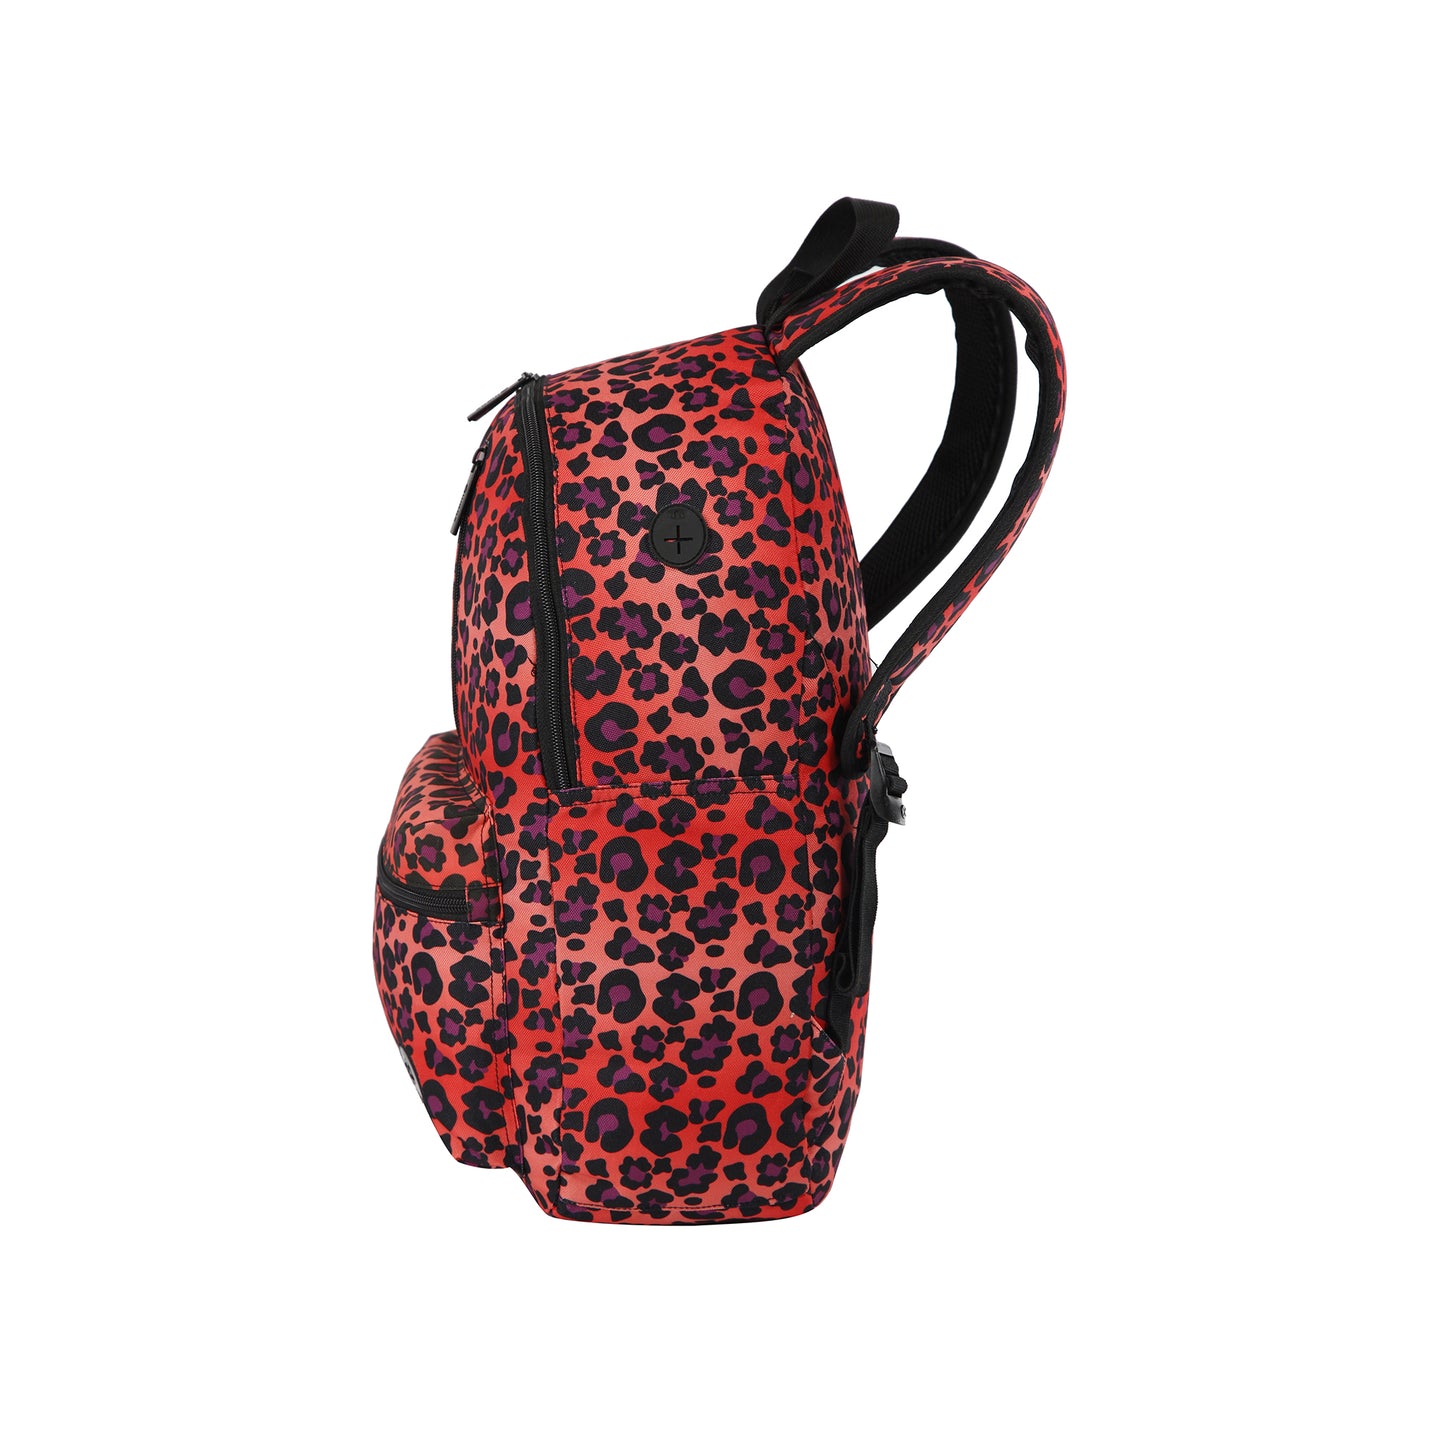  Mochila ENERGY 000 Backpack Warm Leopard 